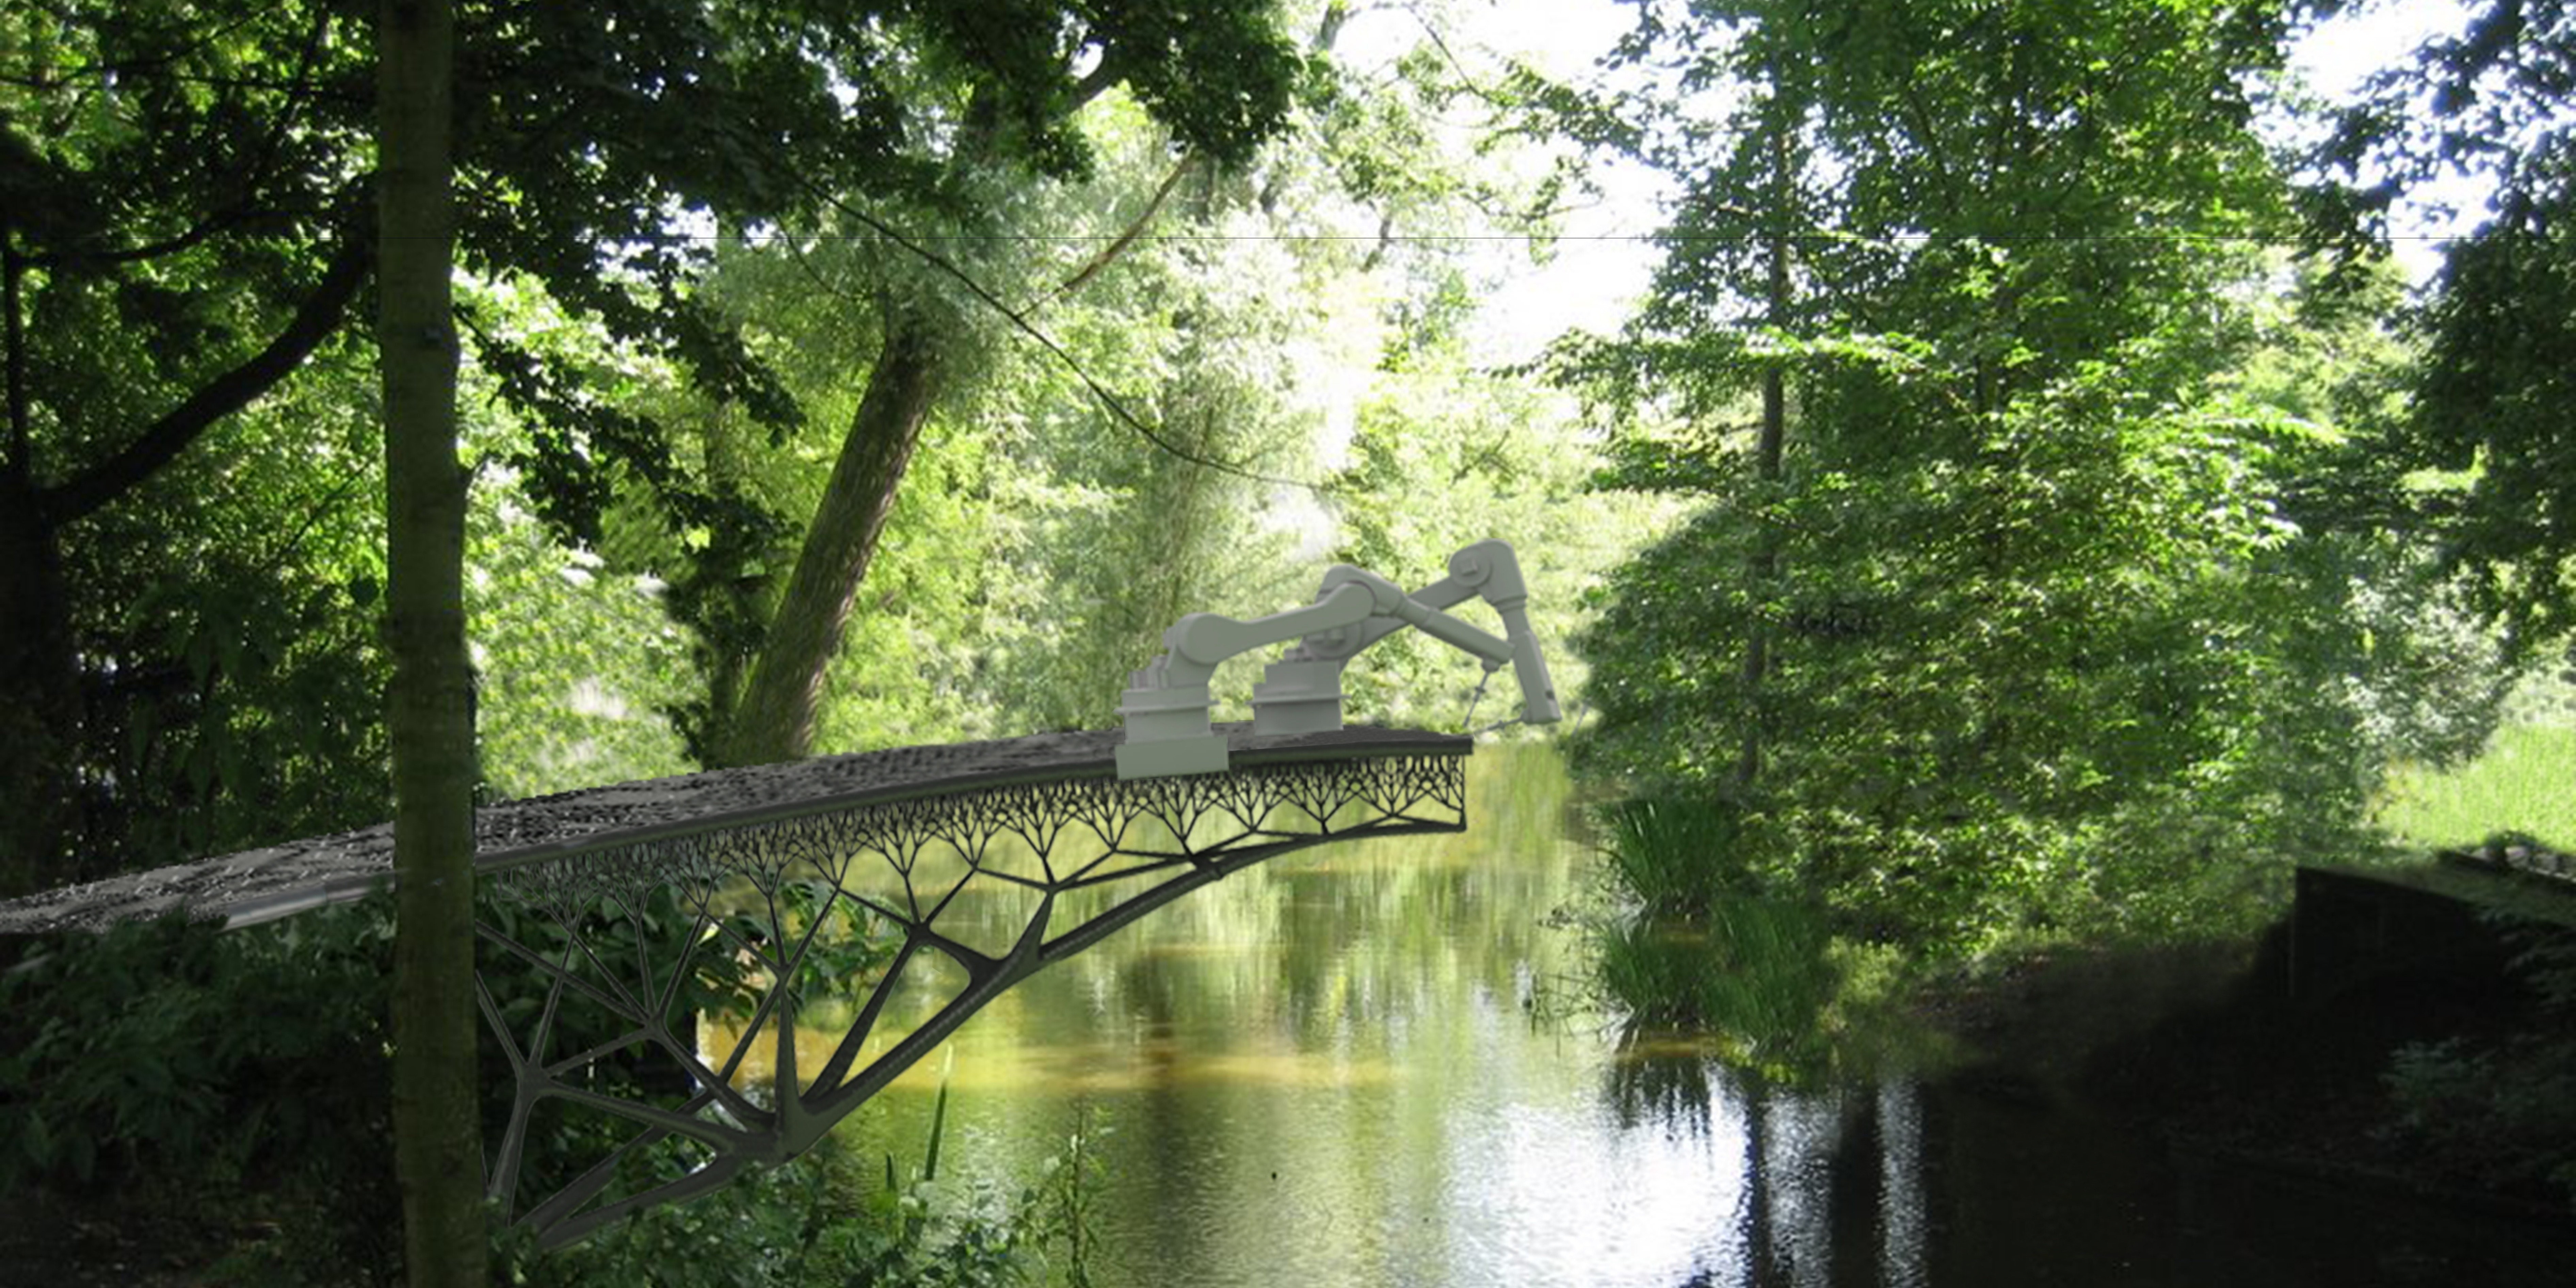 Robôs vão construir uma ponte com tecnologia 3D na Holanda (Foto: Reprodução)